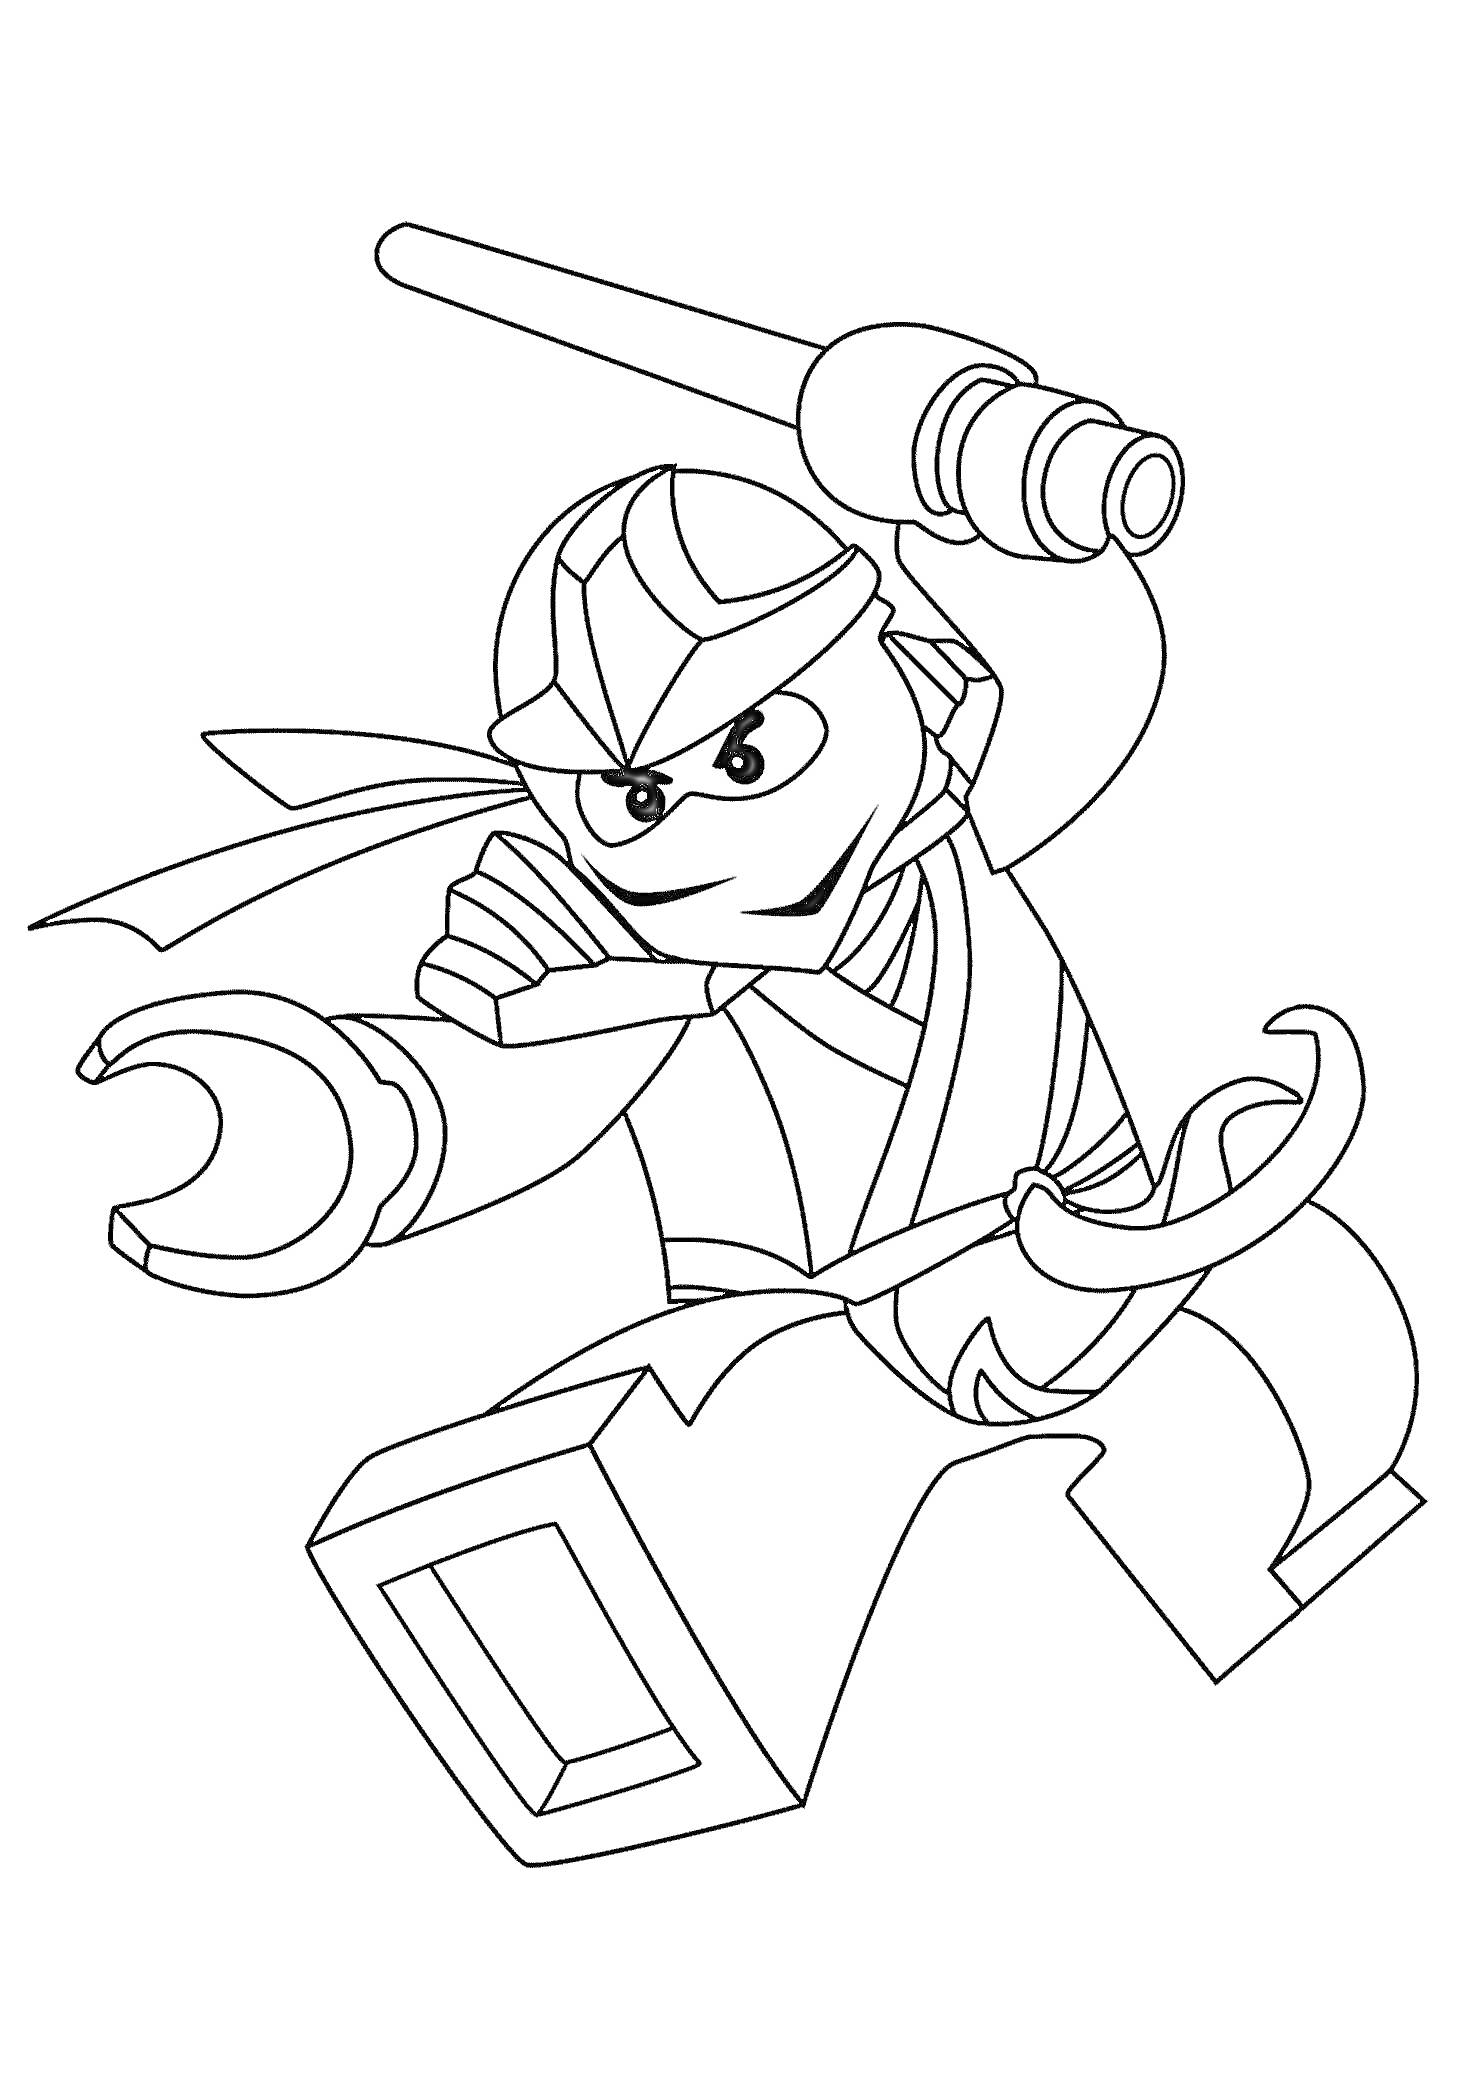 LEGO фигурка в движении с маской, посохом и мечом в боевой стойке